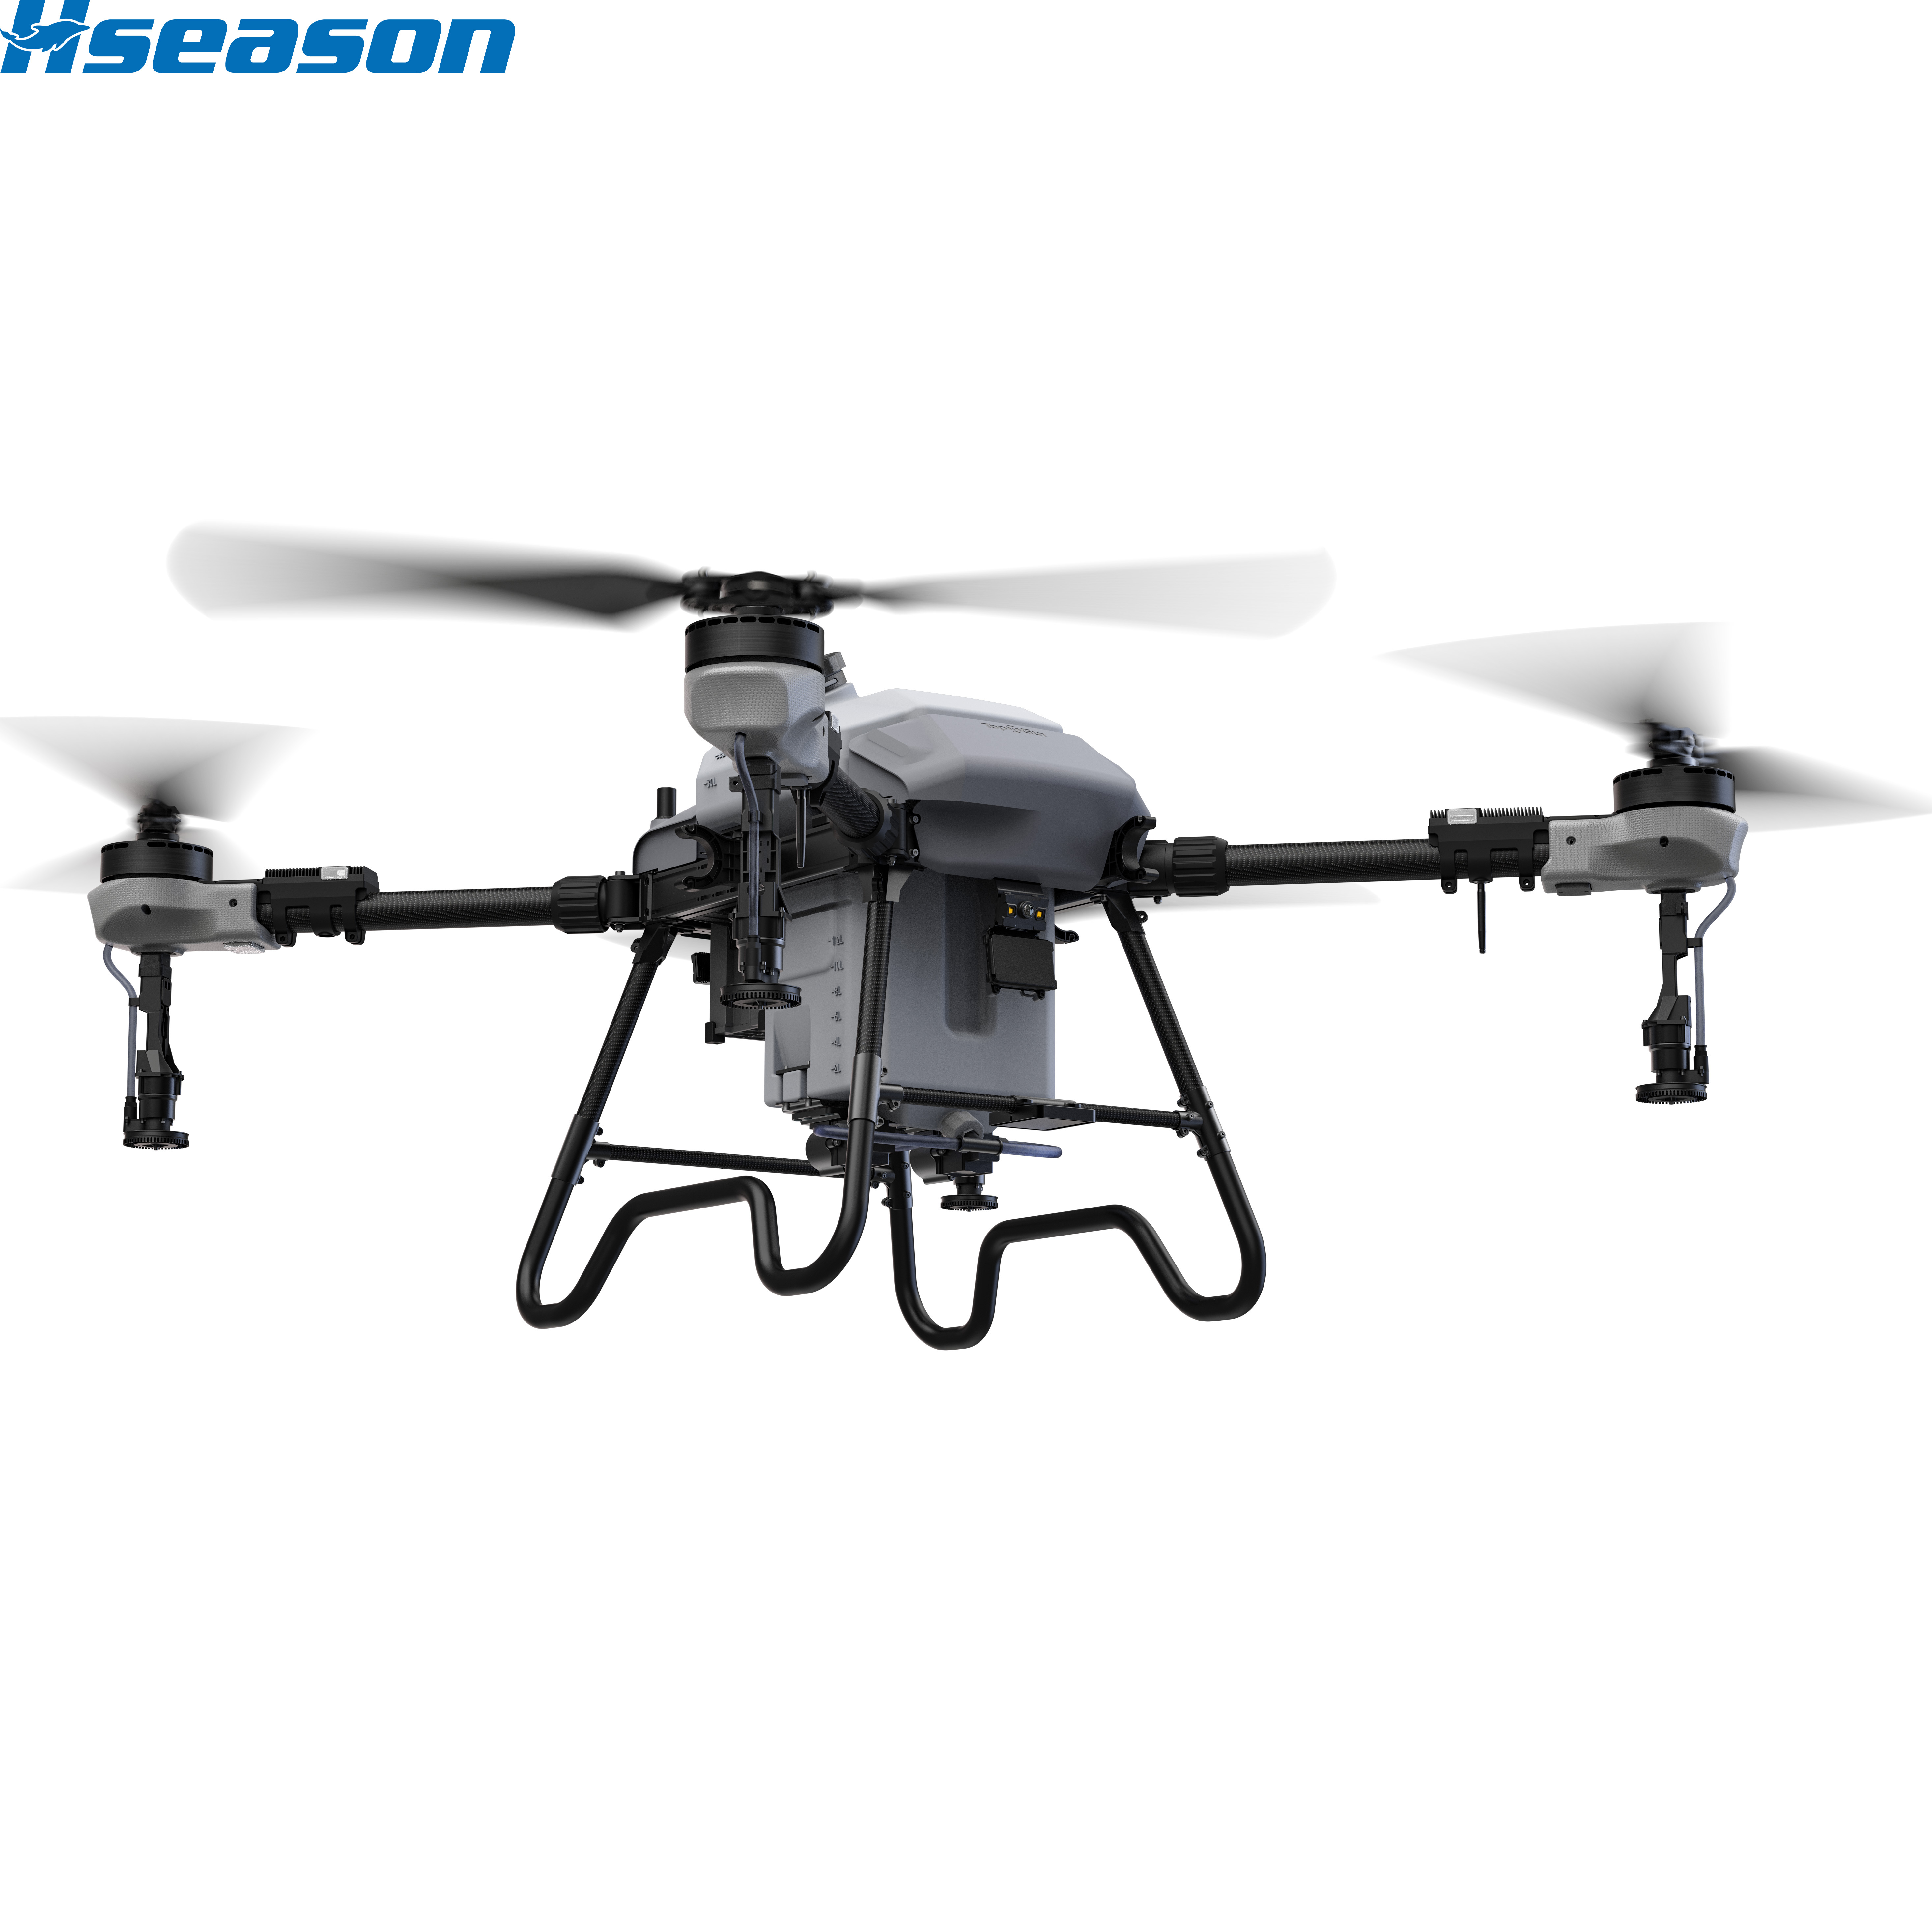 Dron agrícola HS500